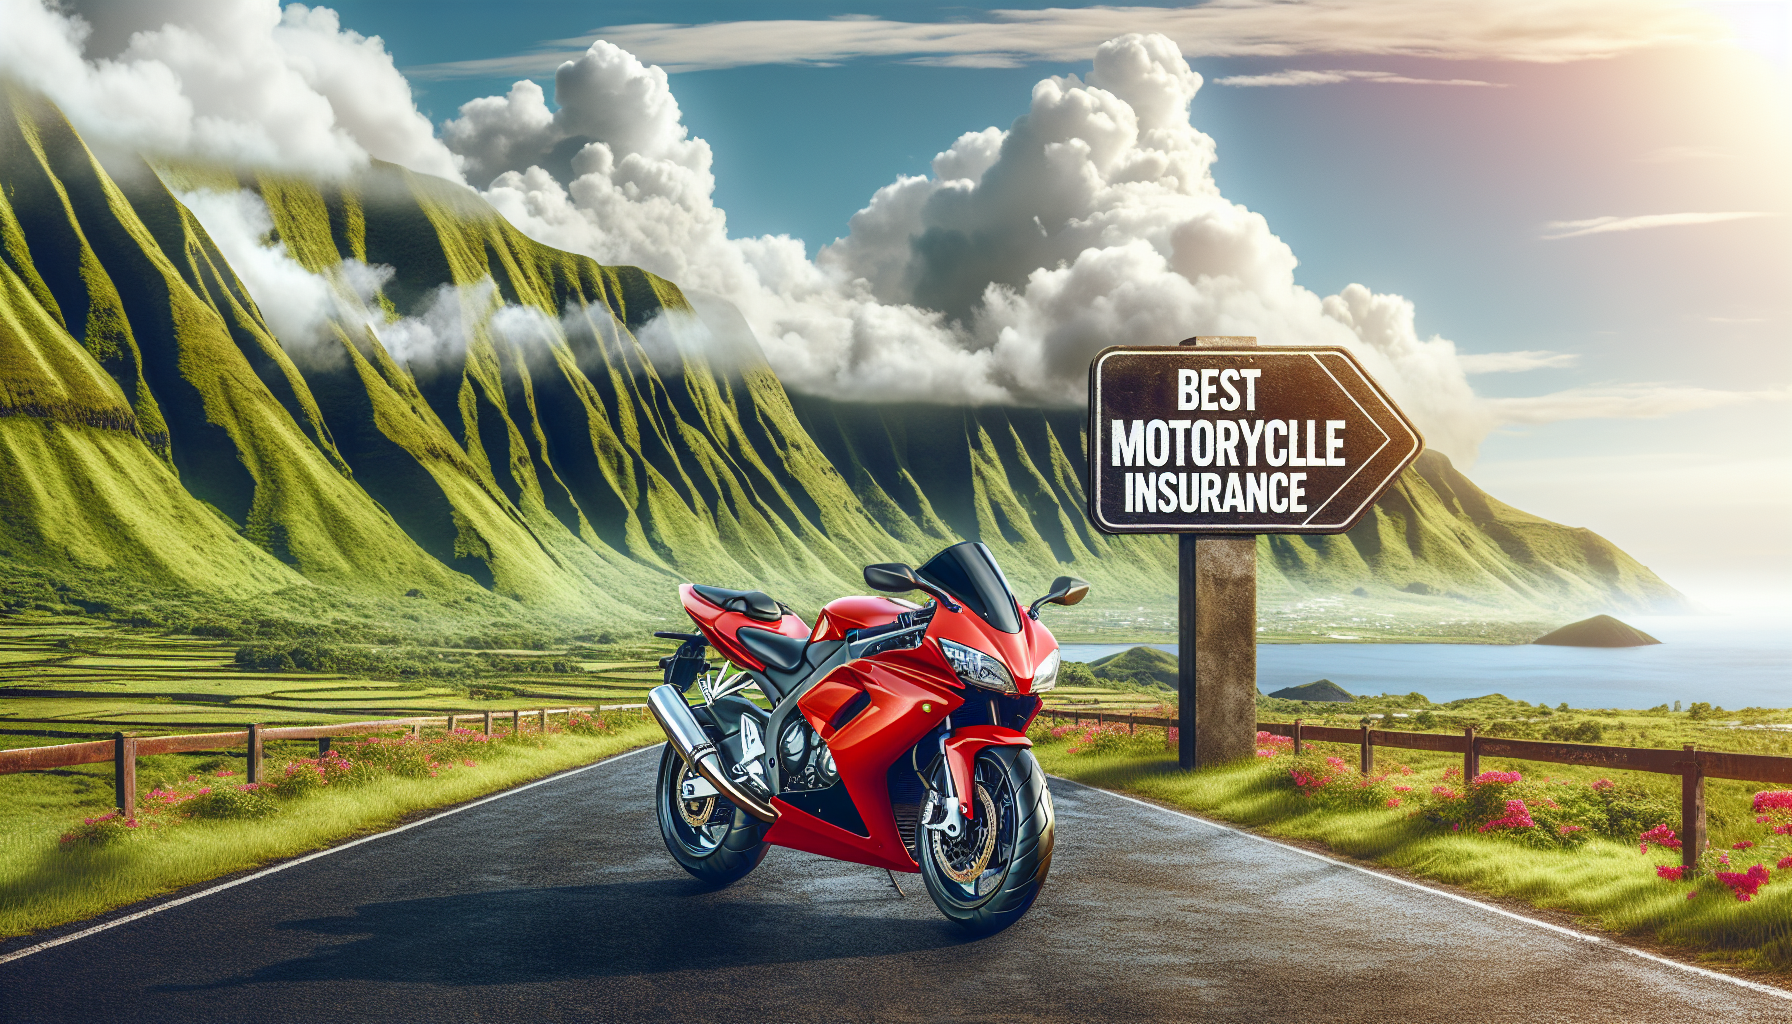 découvrez la meilleure assurance moto à la réunion pour rouler en toute sérénité. obtenez une protection optimale pour votre moto avec nos offres adaptées à vos besoins.